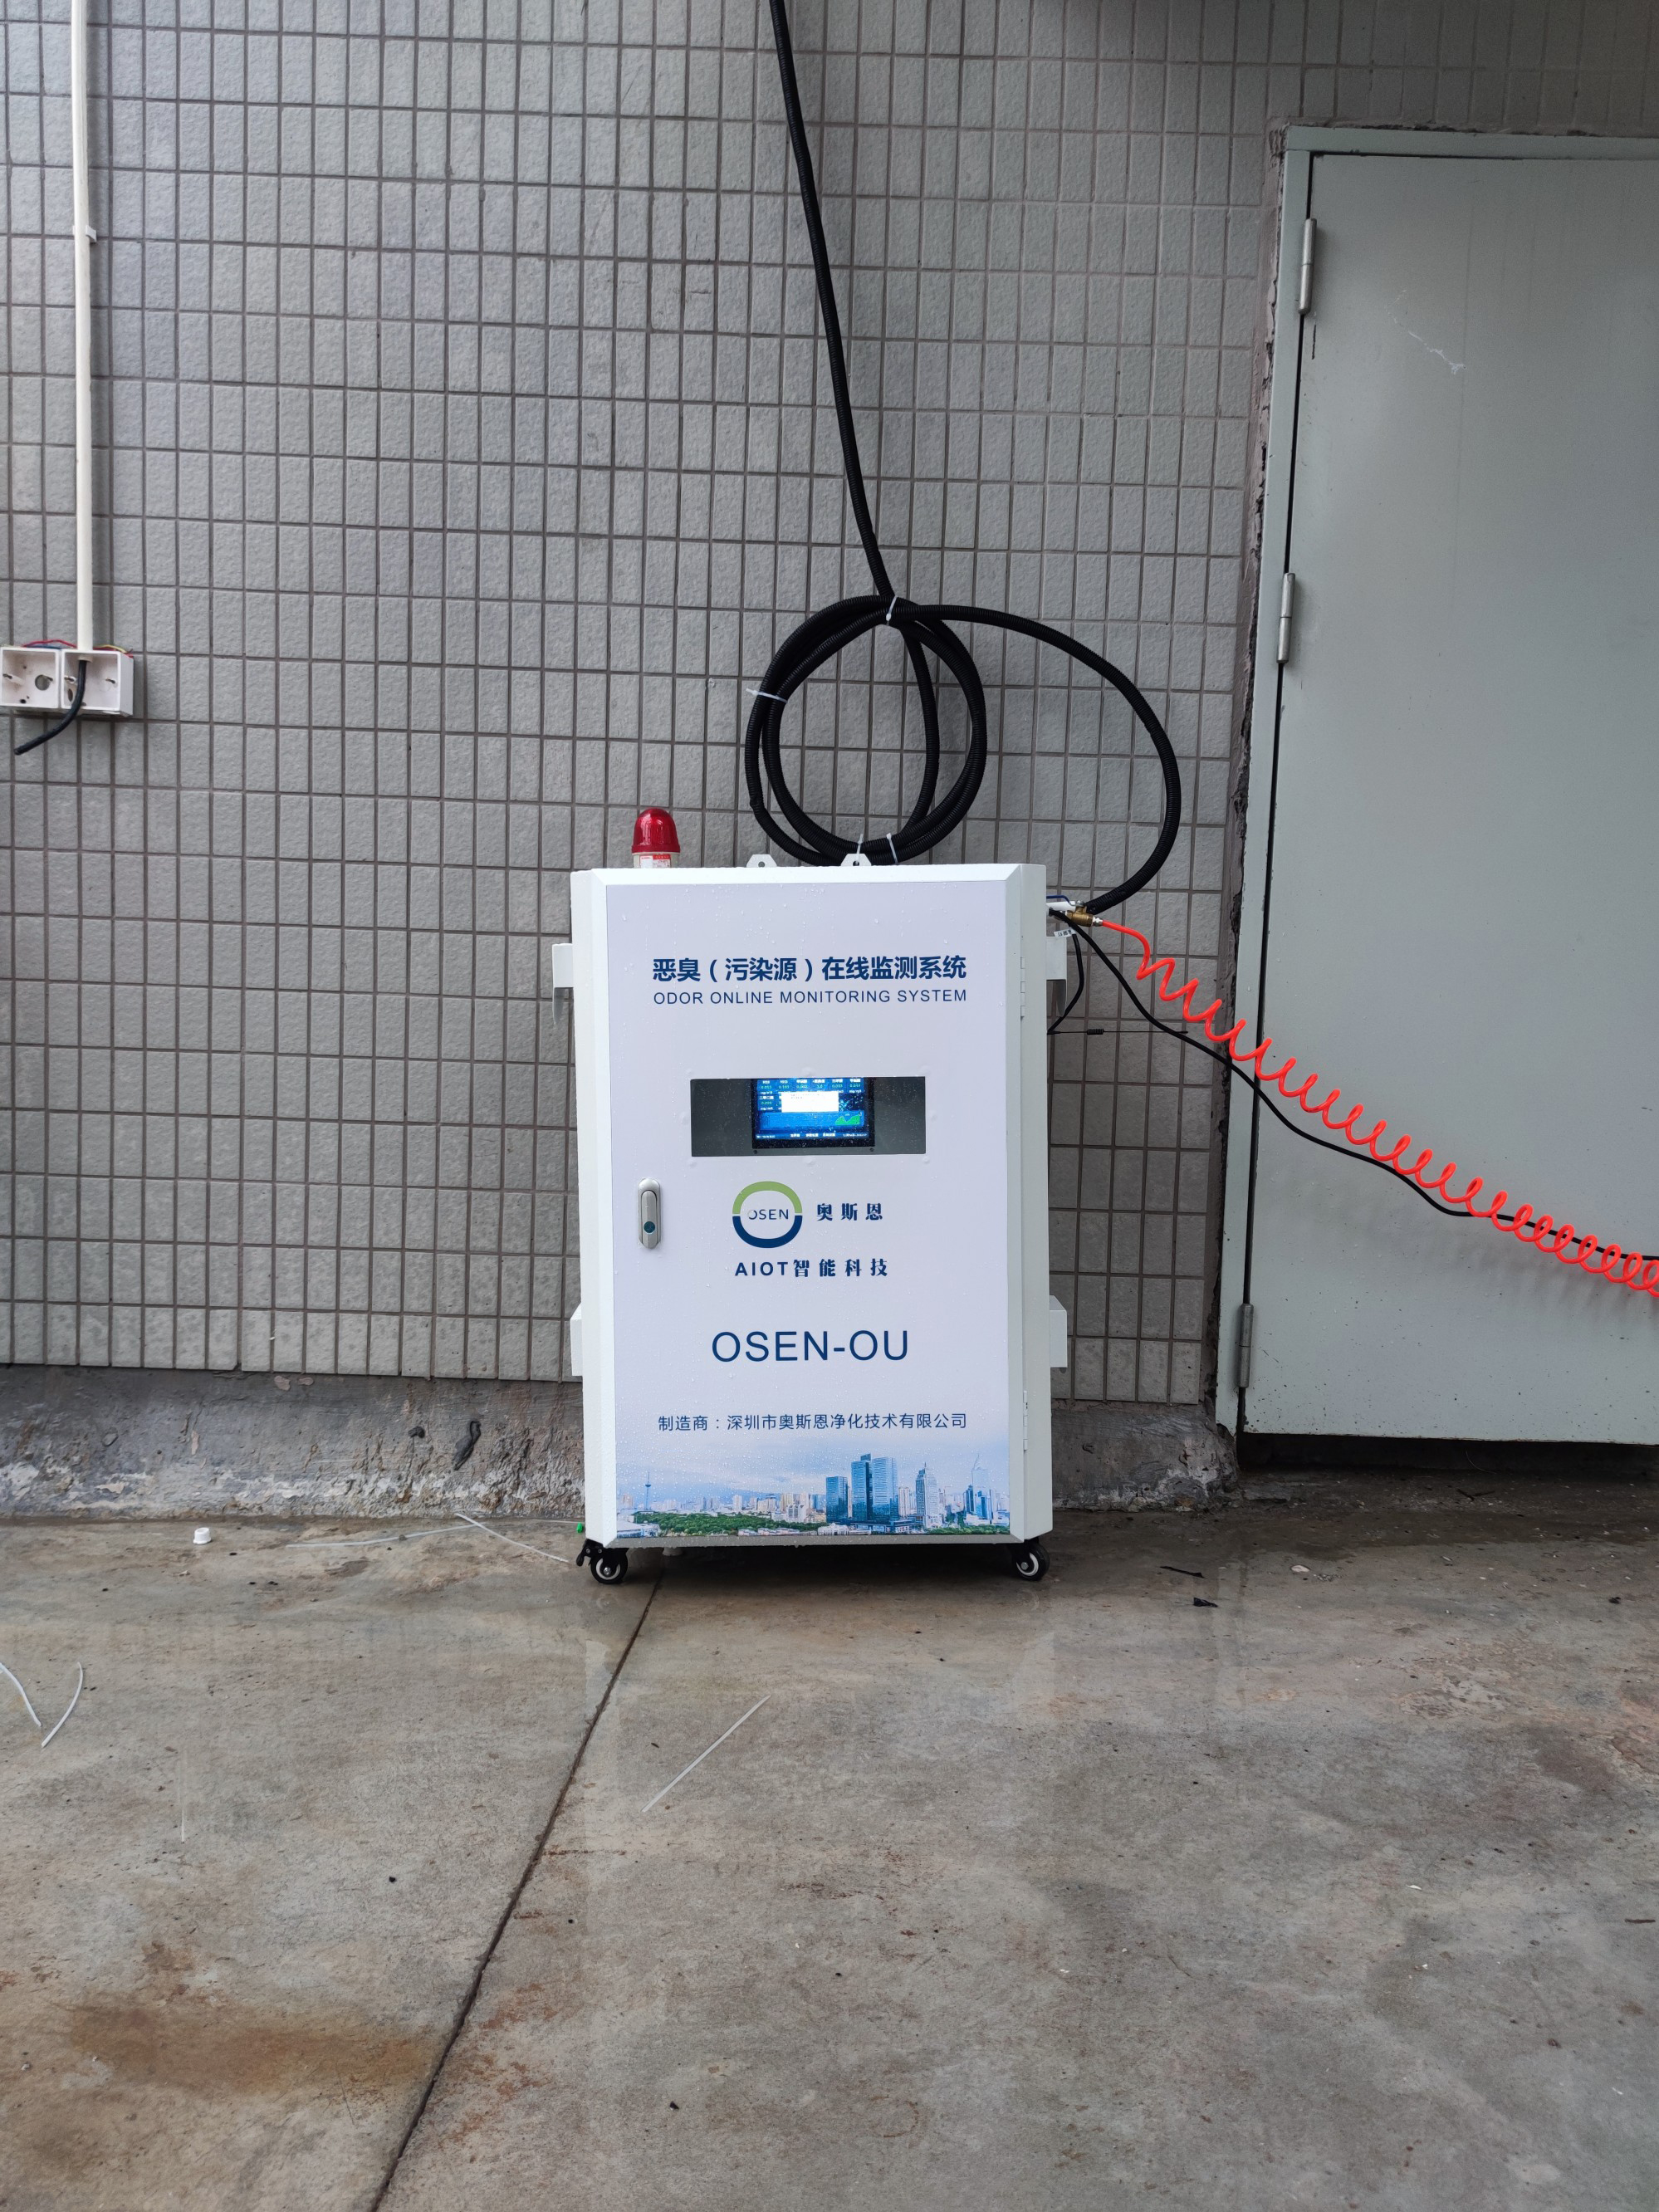 垃圾焚烧处理臭气硫化氢监测设备 湖南娄底废品加工厂恶臭环境监测系统